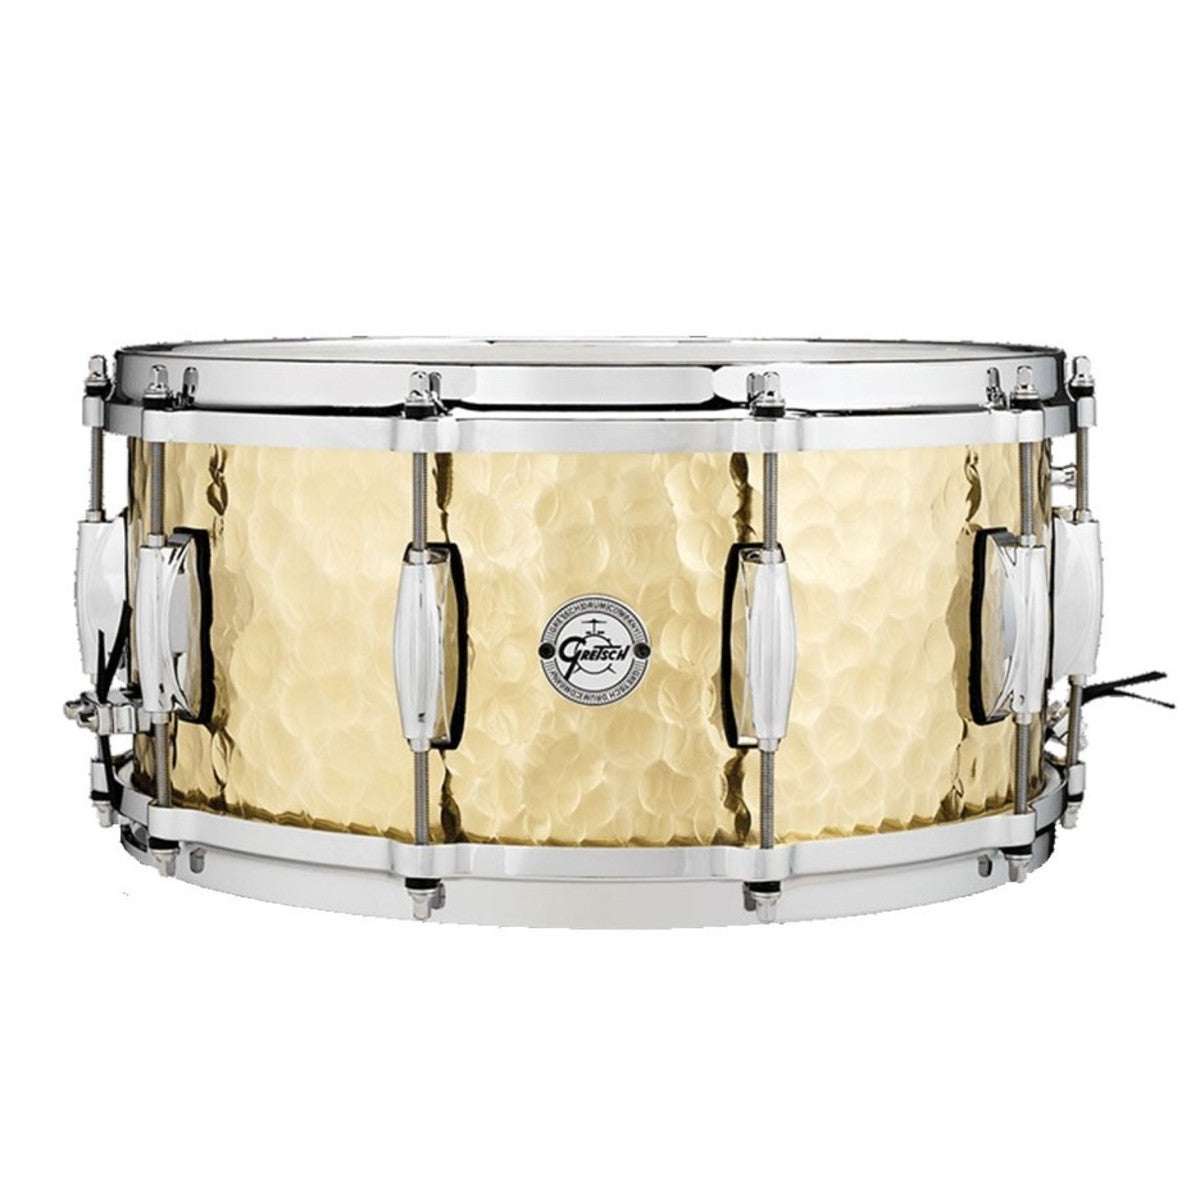 Gretsch "Full Range" 14"x6.5" Hammered Brass Snare Drum